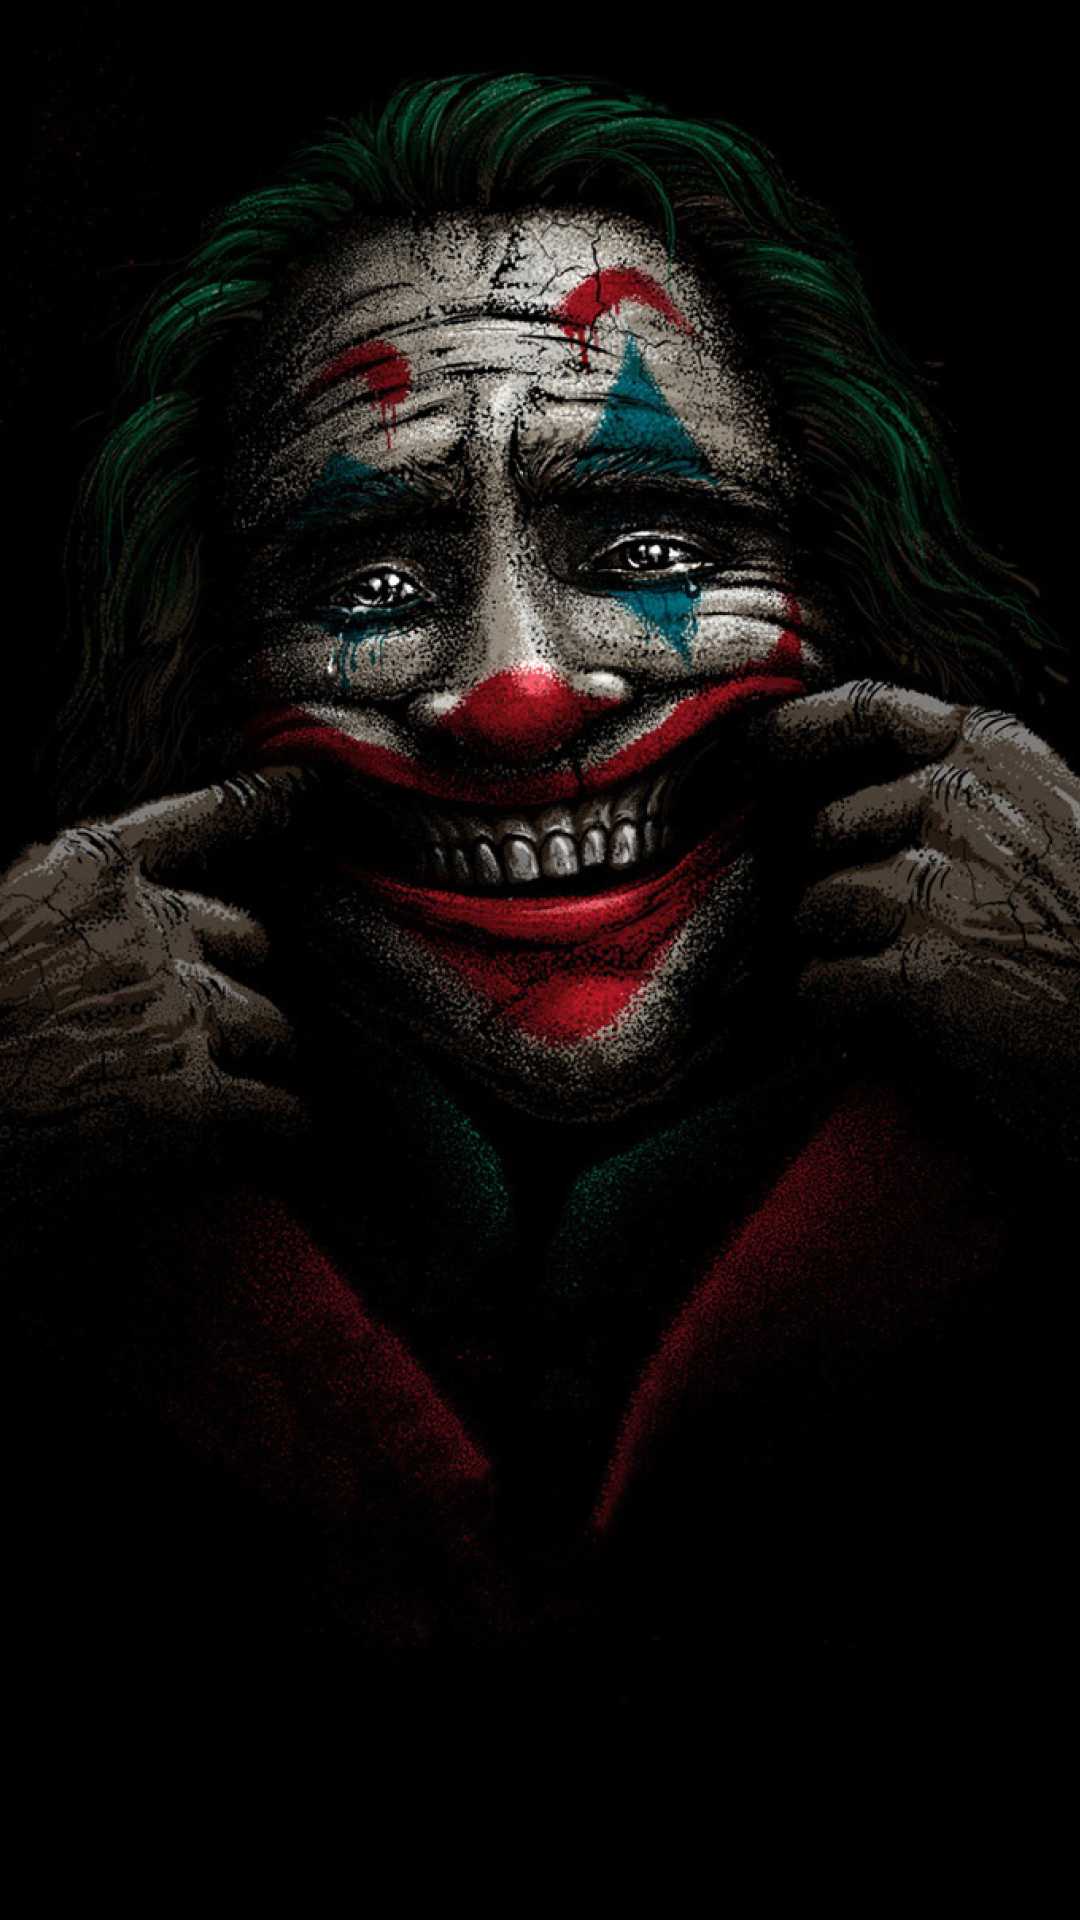 Joker, buồn, khóc, ảnh: Bạn đã từng khóc vì Joker trong phim? Hãy xem ảnh liên quan đến nhân vật này. Với trang phục đặc biệt và tính cách phức tạp, Joker là một trong những nhân vật được yêu thích nhất trong điện ảnh. Xem ảnh và cảm nhận sự buồn của nhân vật này.